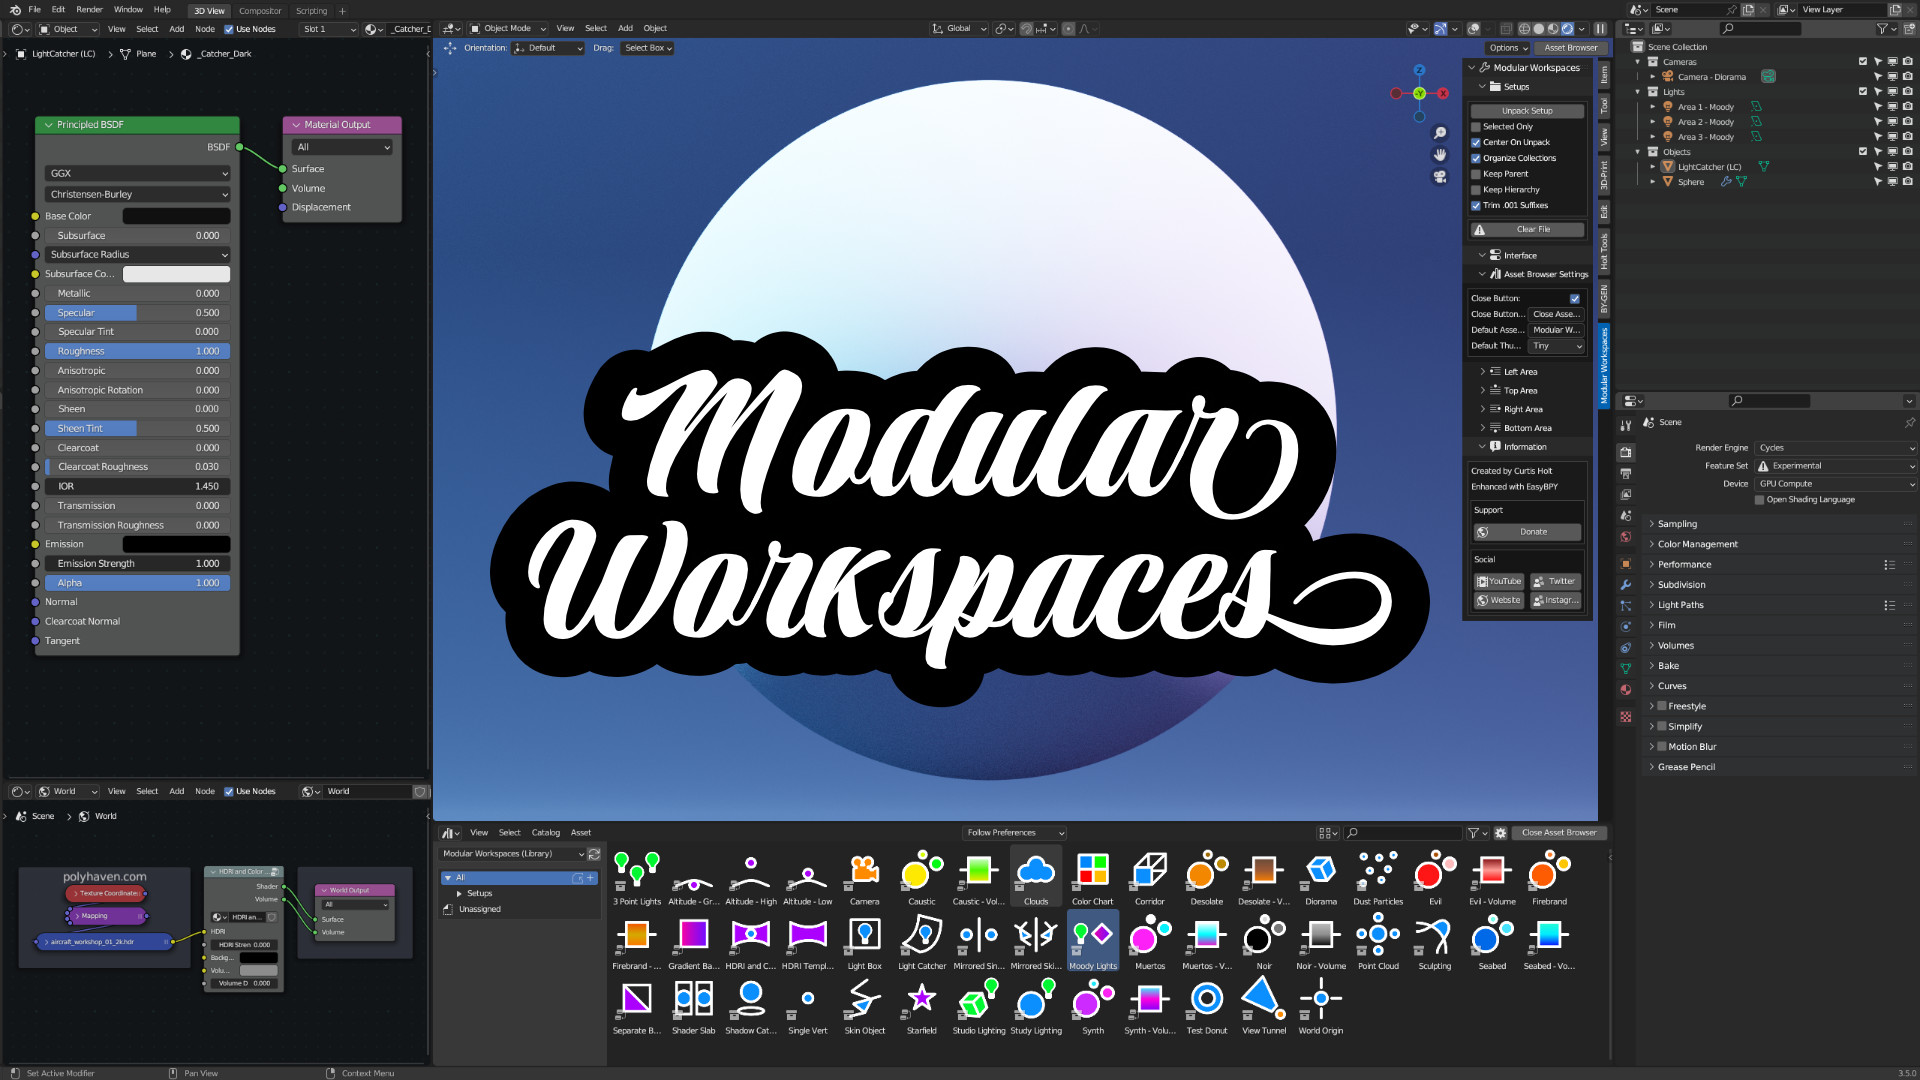 Modular Workspaces 1.7.0 for Blender